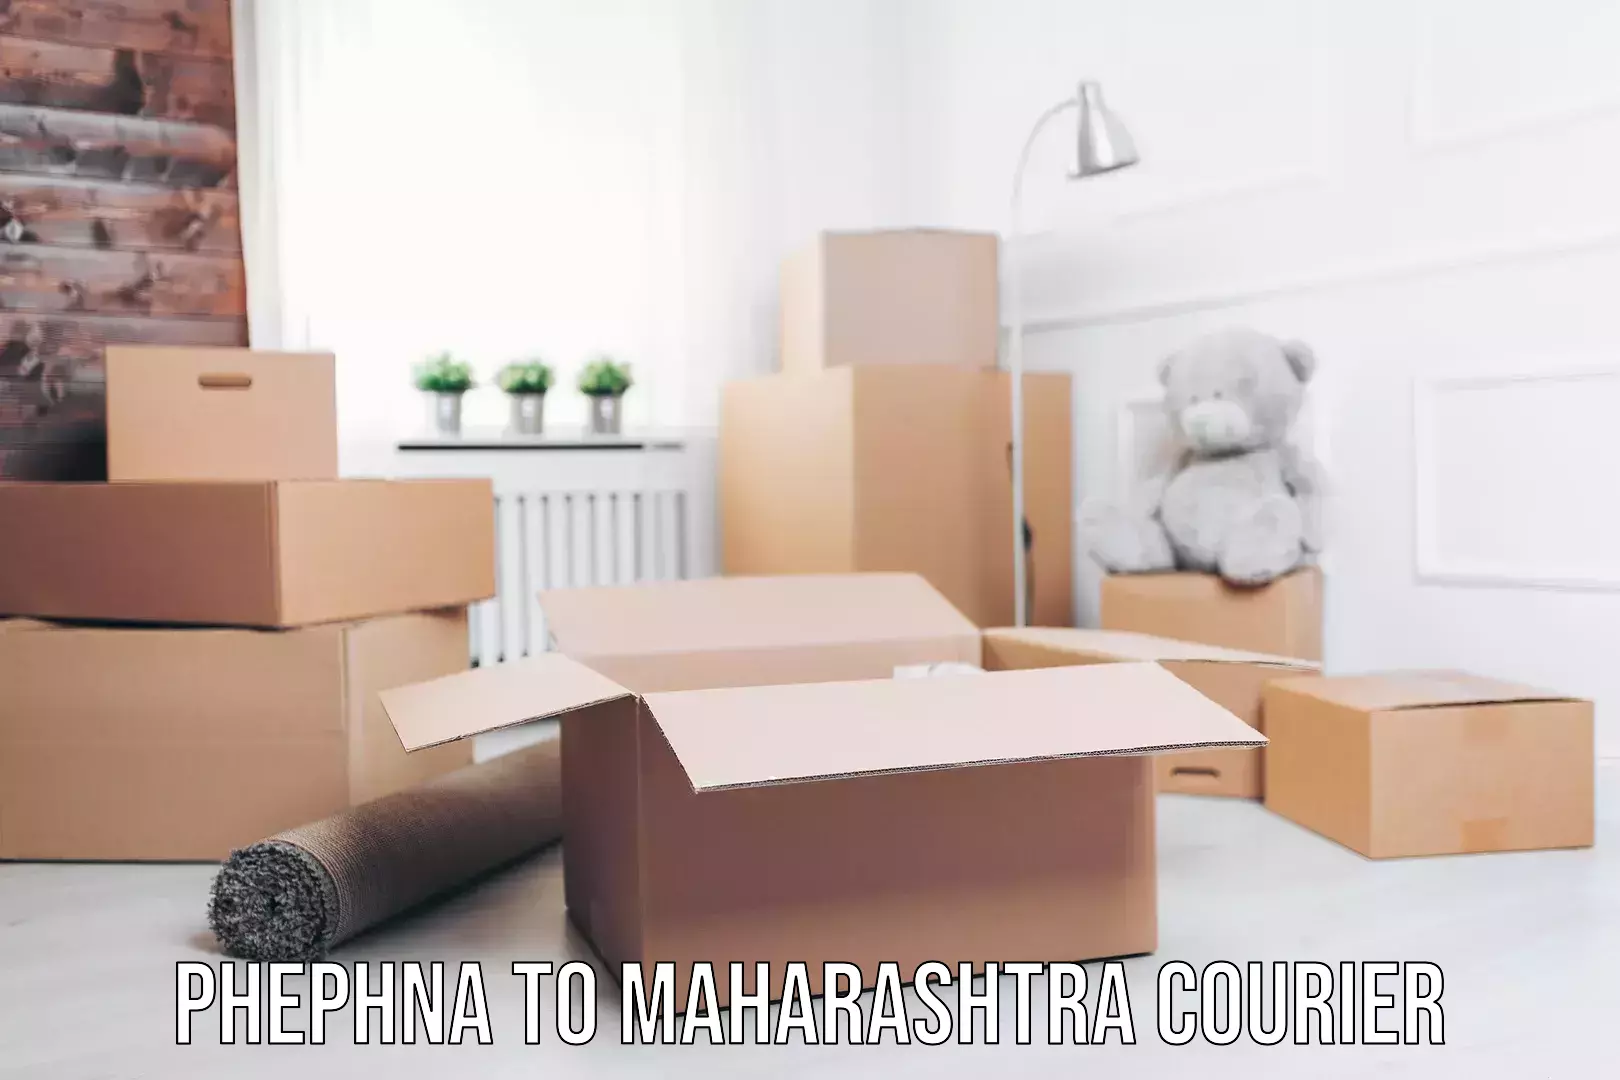 Door-to-door relocation services Phephna to Maharashtra